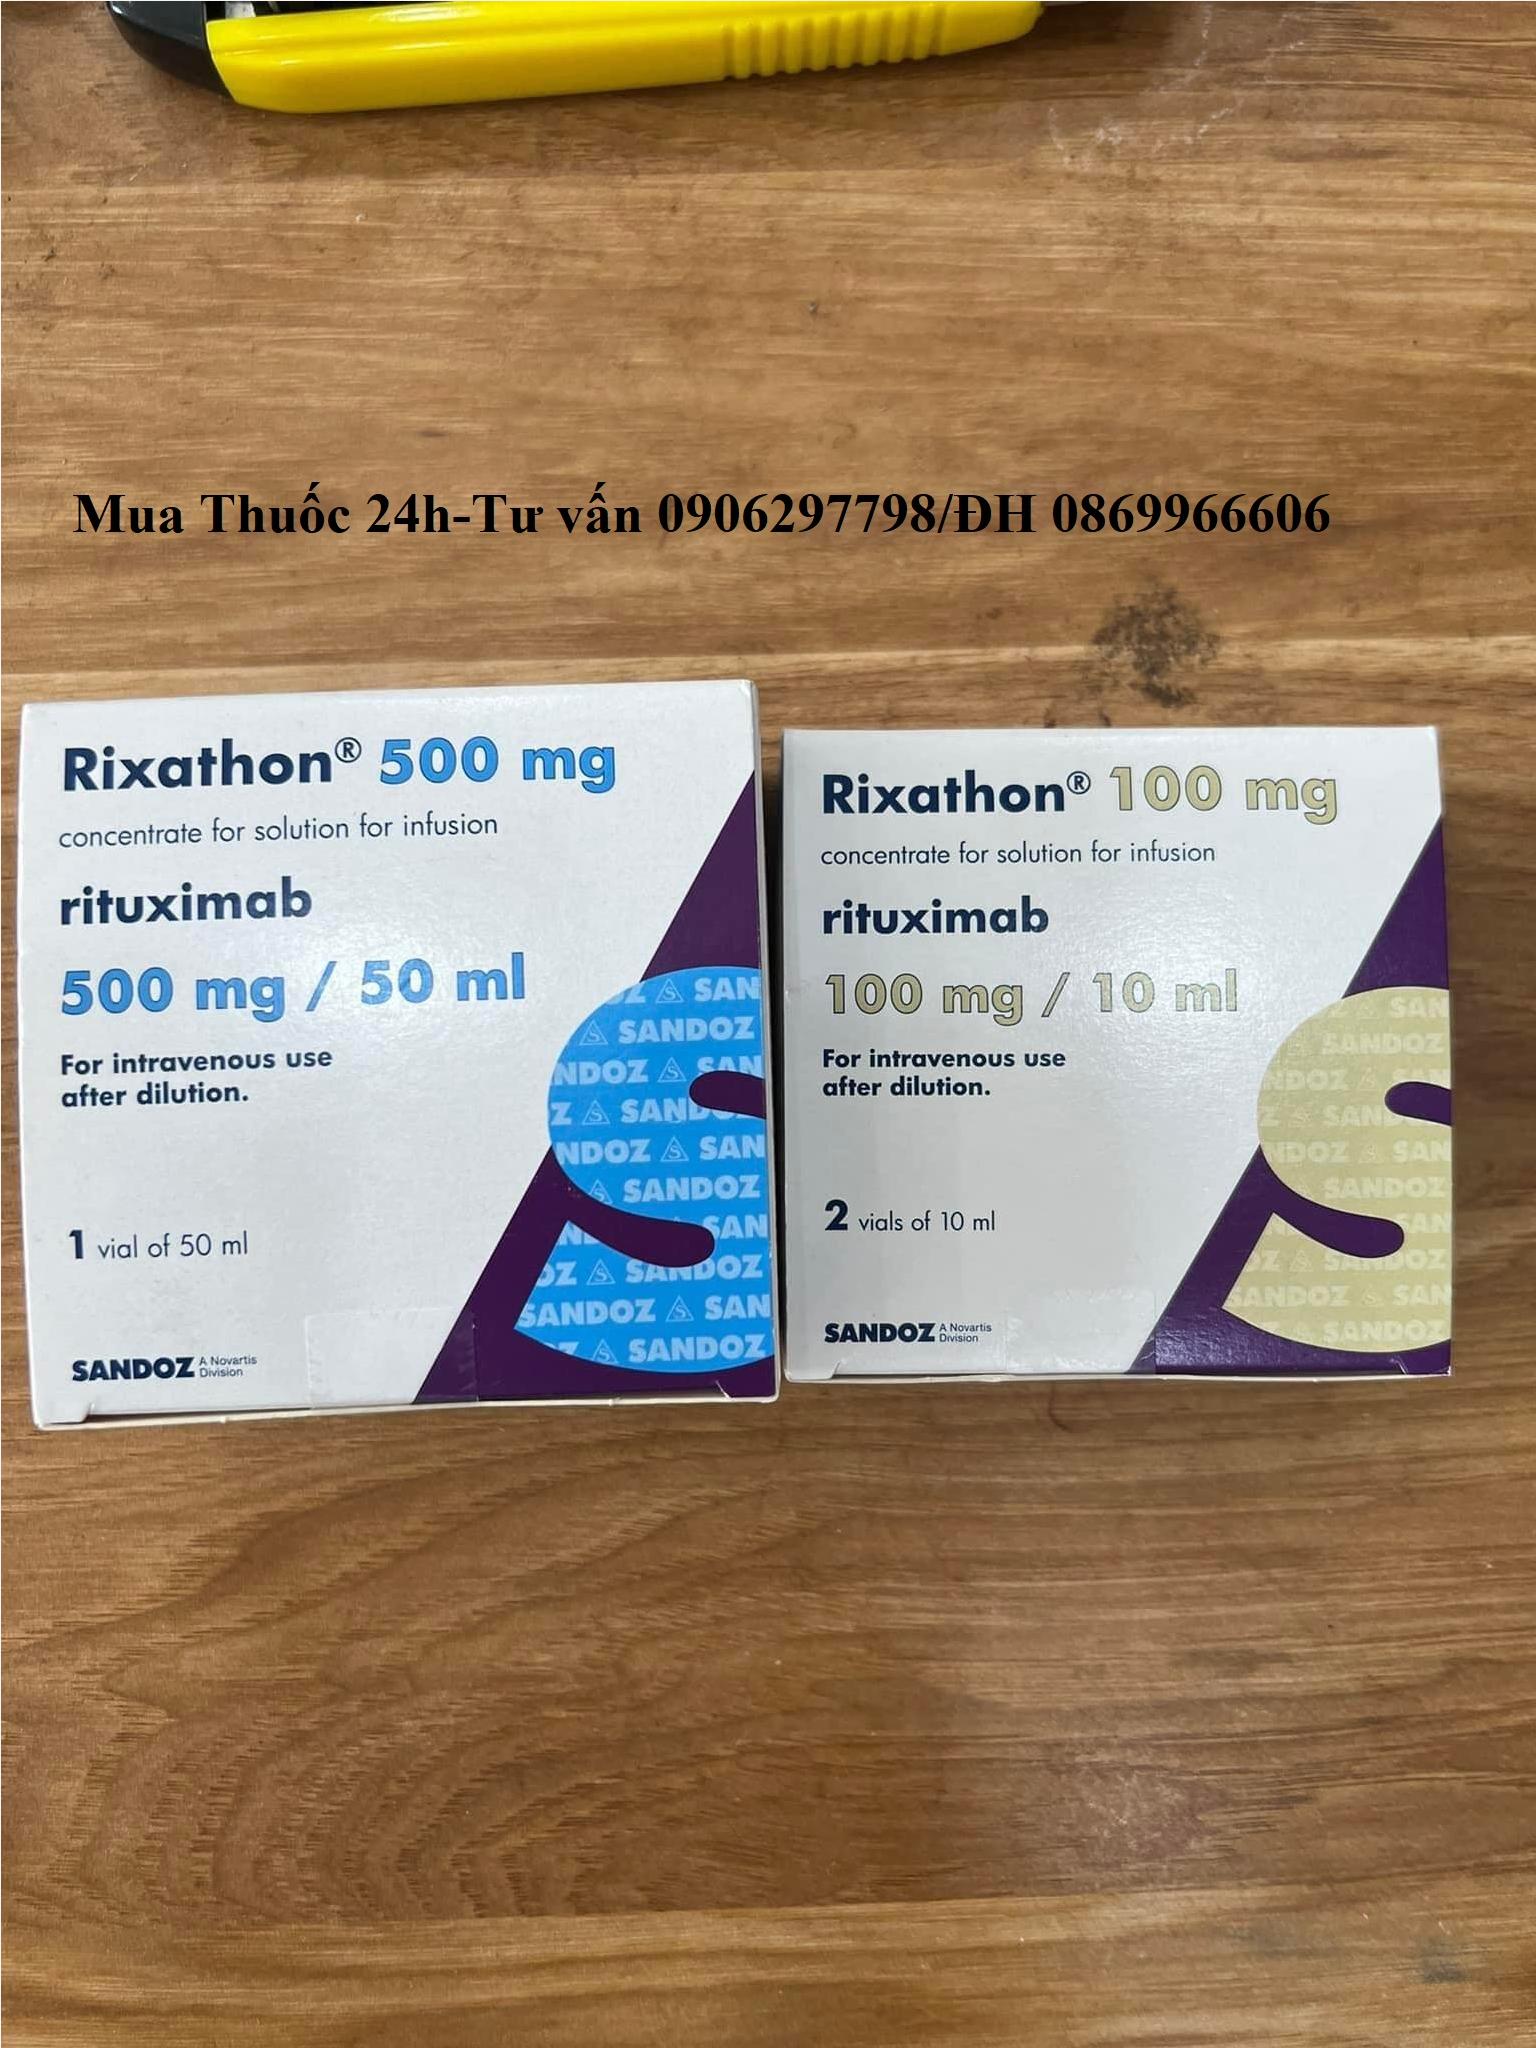 Thuốc Rixathon Rituximab giá bao nhiêu mua ở đâu?